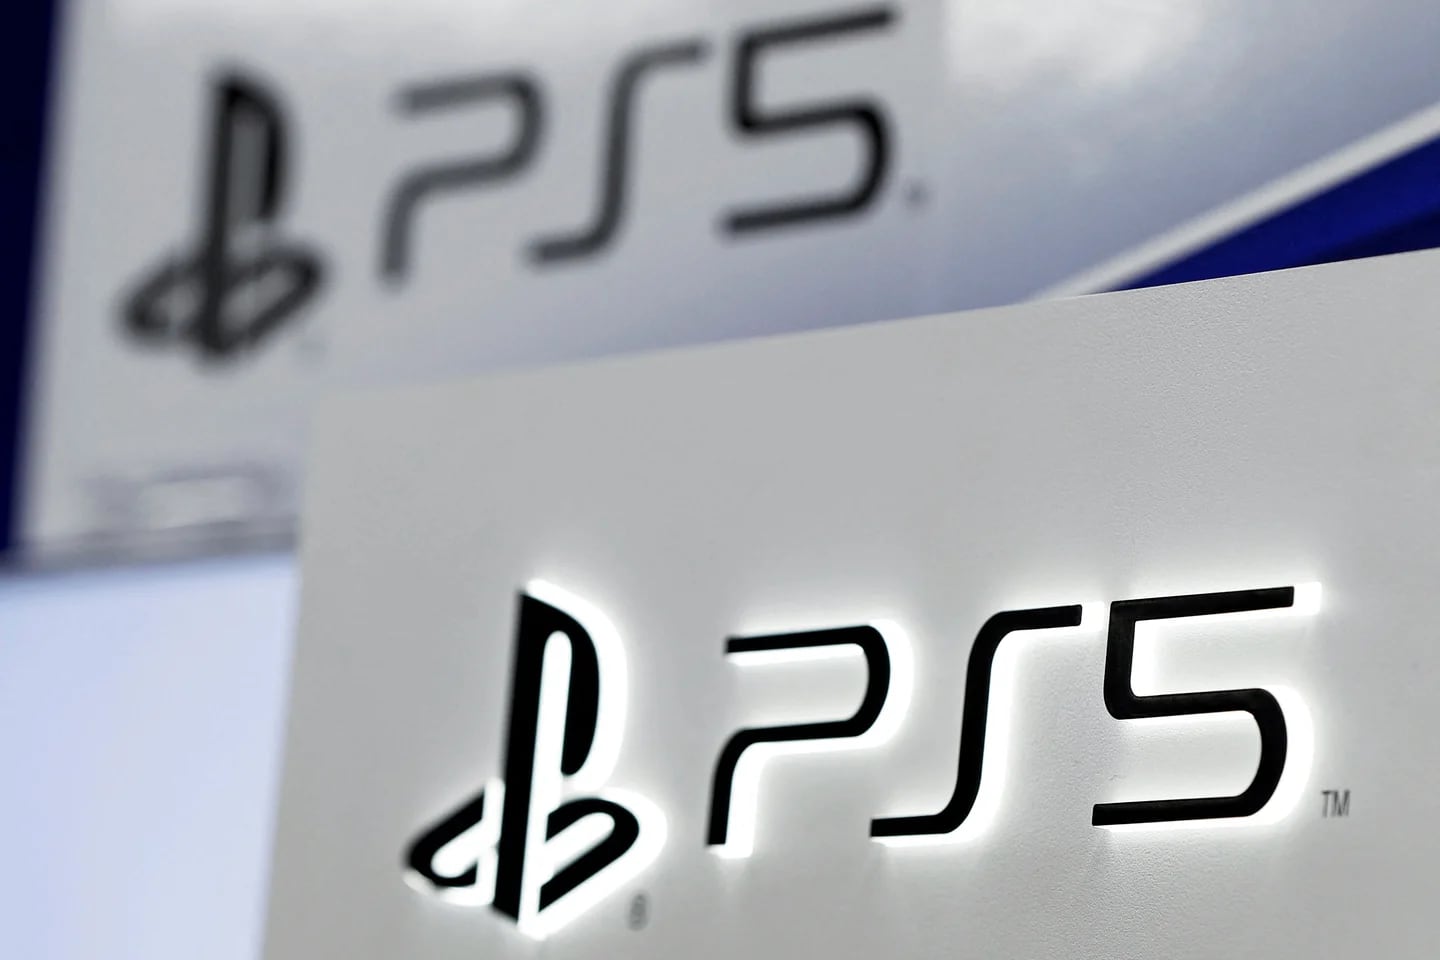 Sony PlayStation 5 se transforma en PS5 Slim con un chasis de 19 mm de  grosor -  News